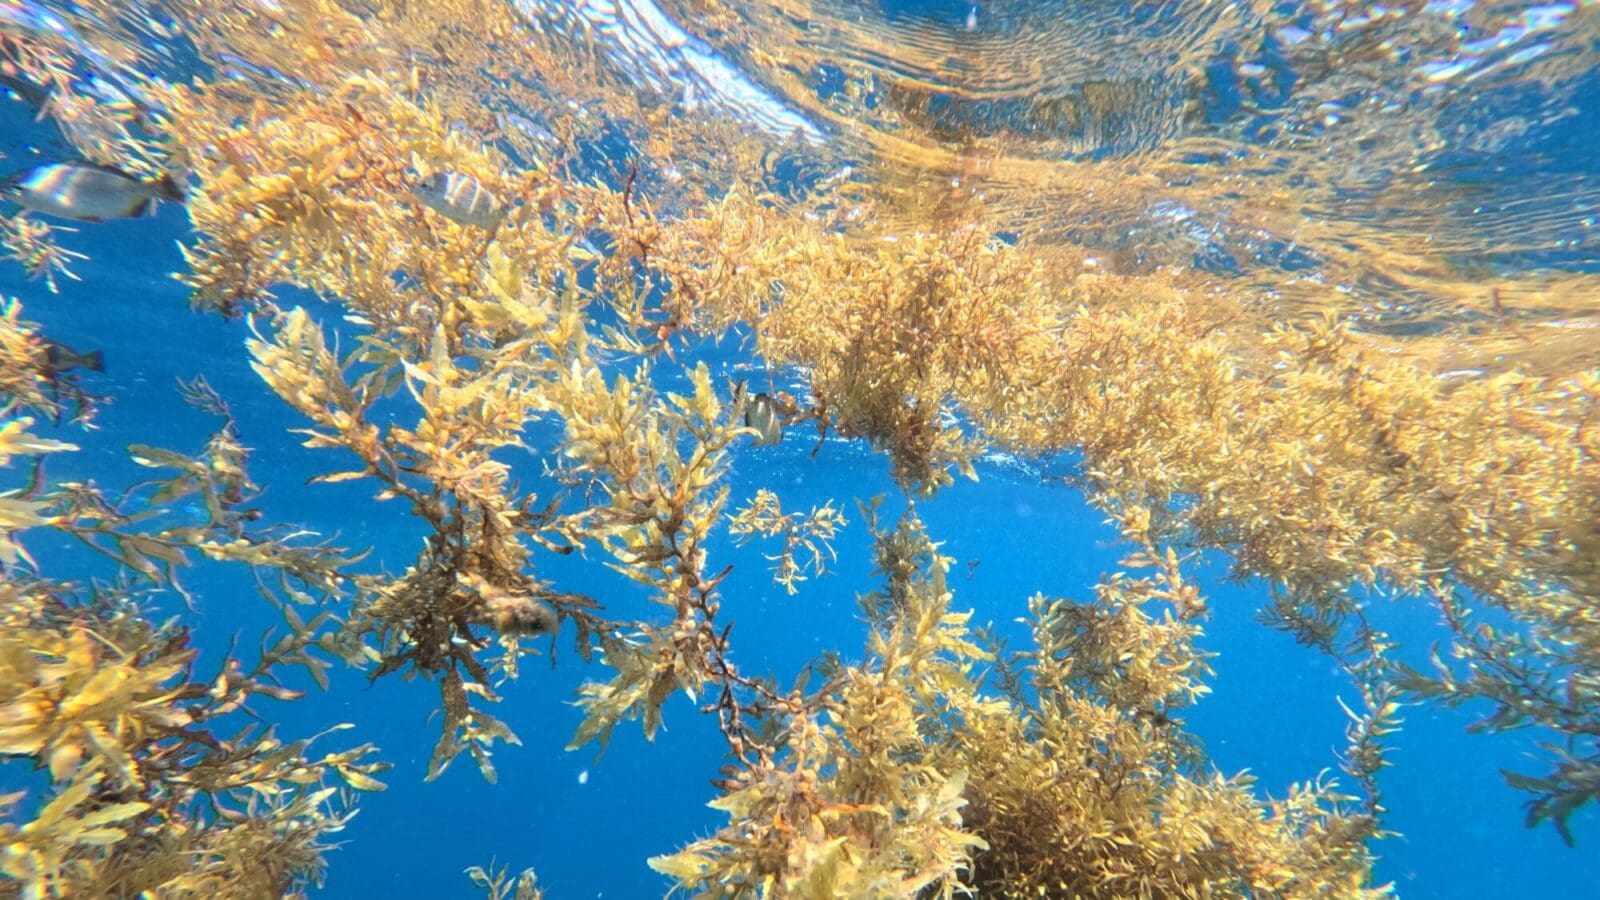 Floating seaweed in the ocean.